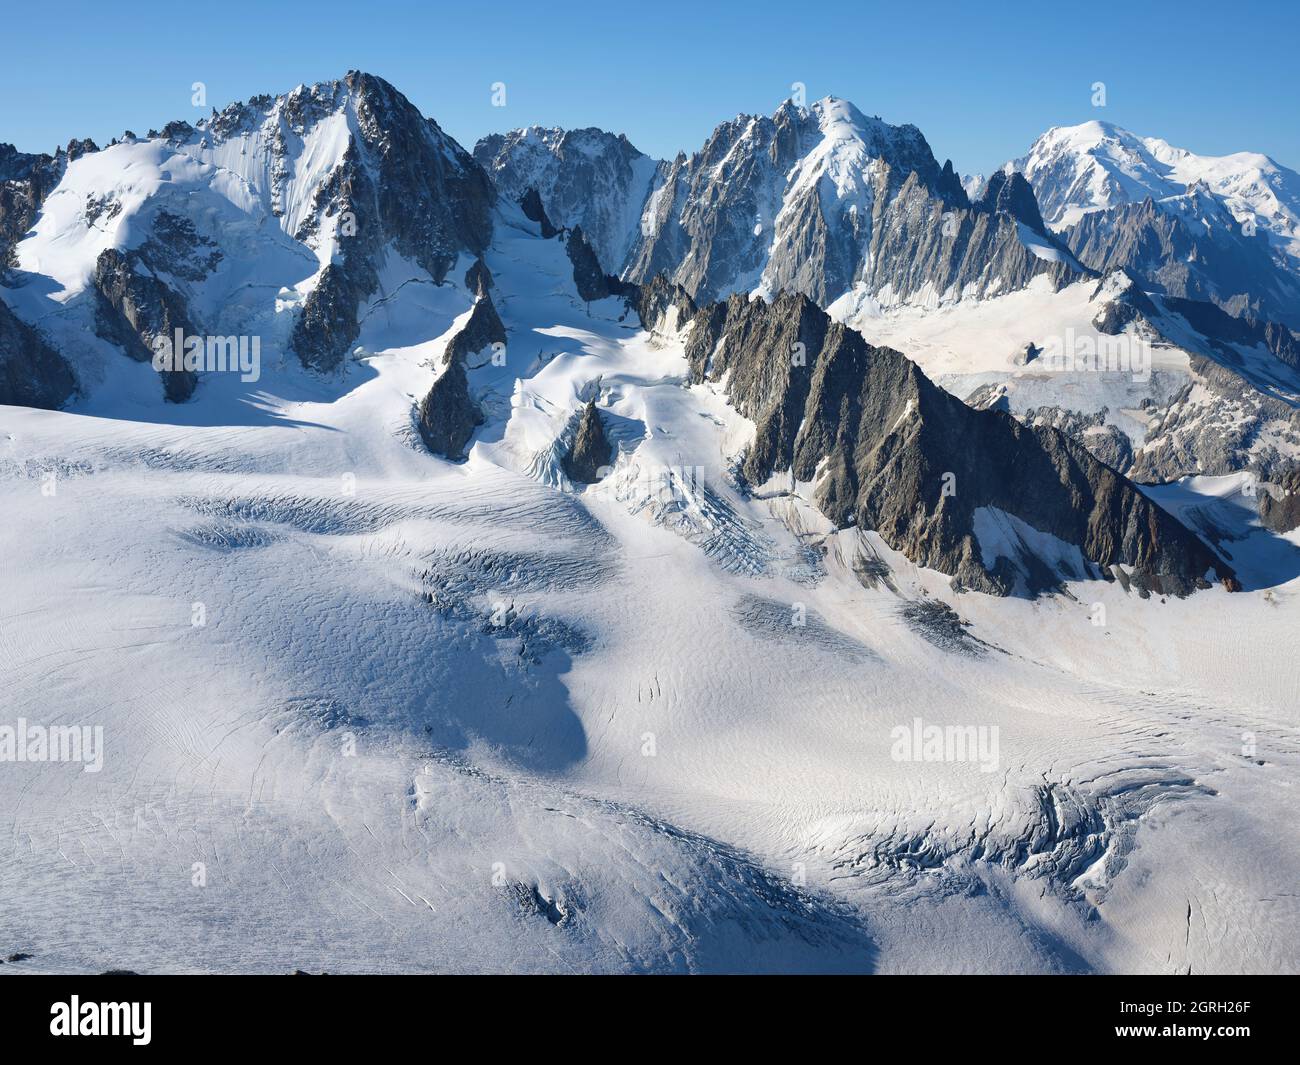 LUFTAUFNAHME. Von links nach rechts: Aiguille du Chardonnet (3824 m), Aiguille Verte (4122 m), Mont Blanc (4807 m). Chamonix, Haute-Savoie, Frankreich. Stockfoto